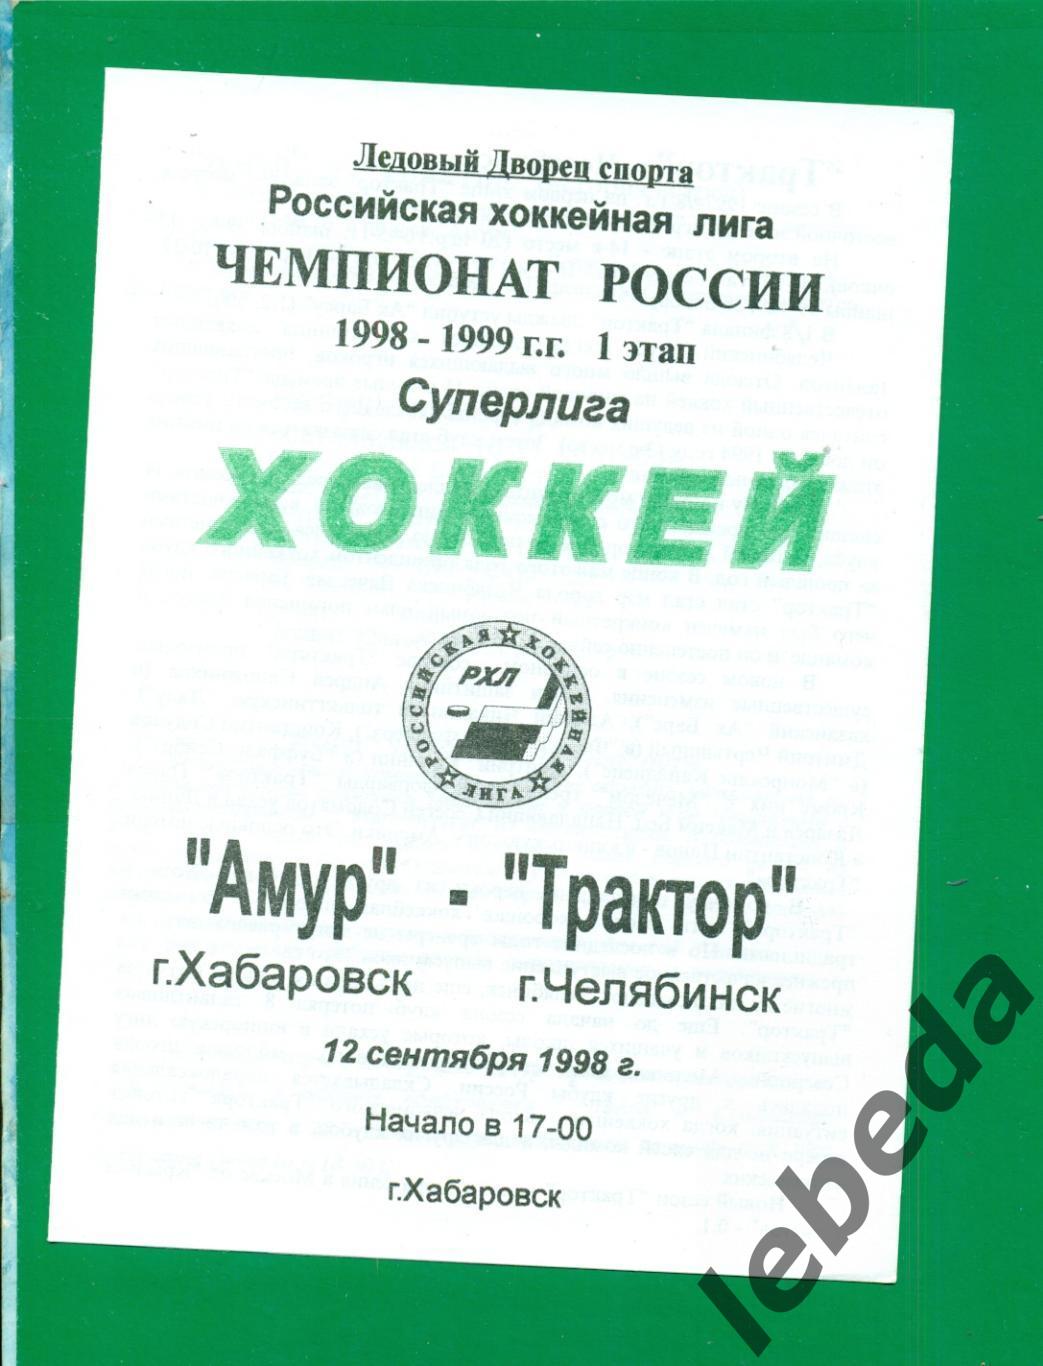 Амур Хабаровск - Трактор Челябинск - 1998 / 1999 г. (12.09.1998.)